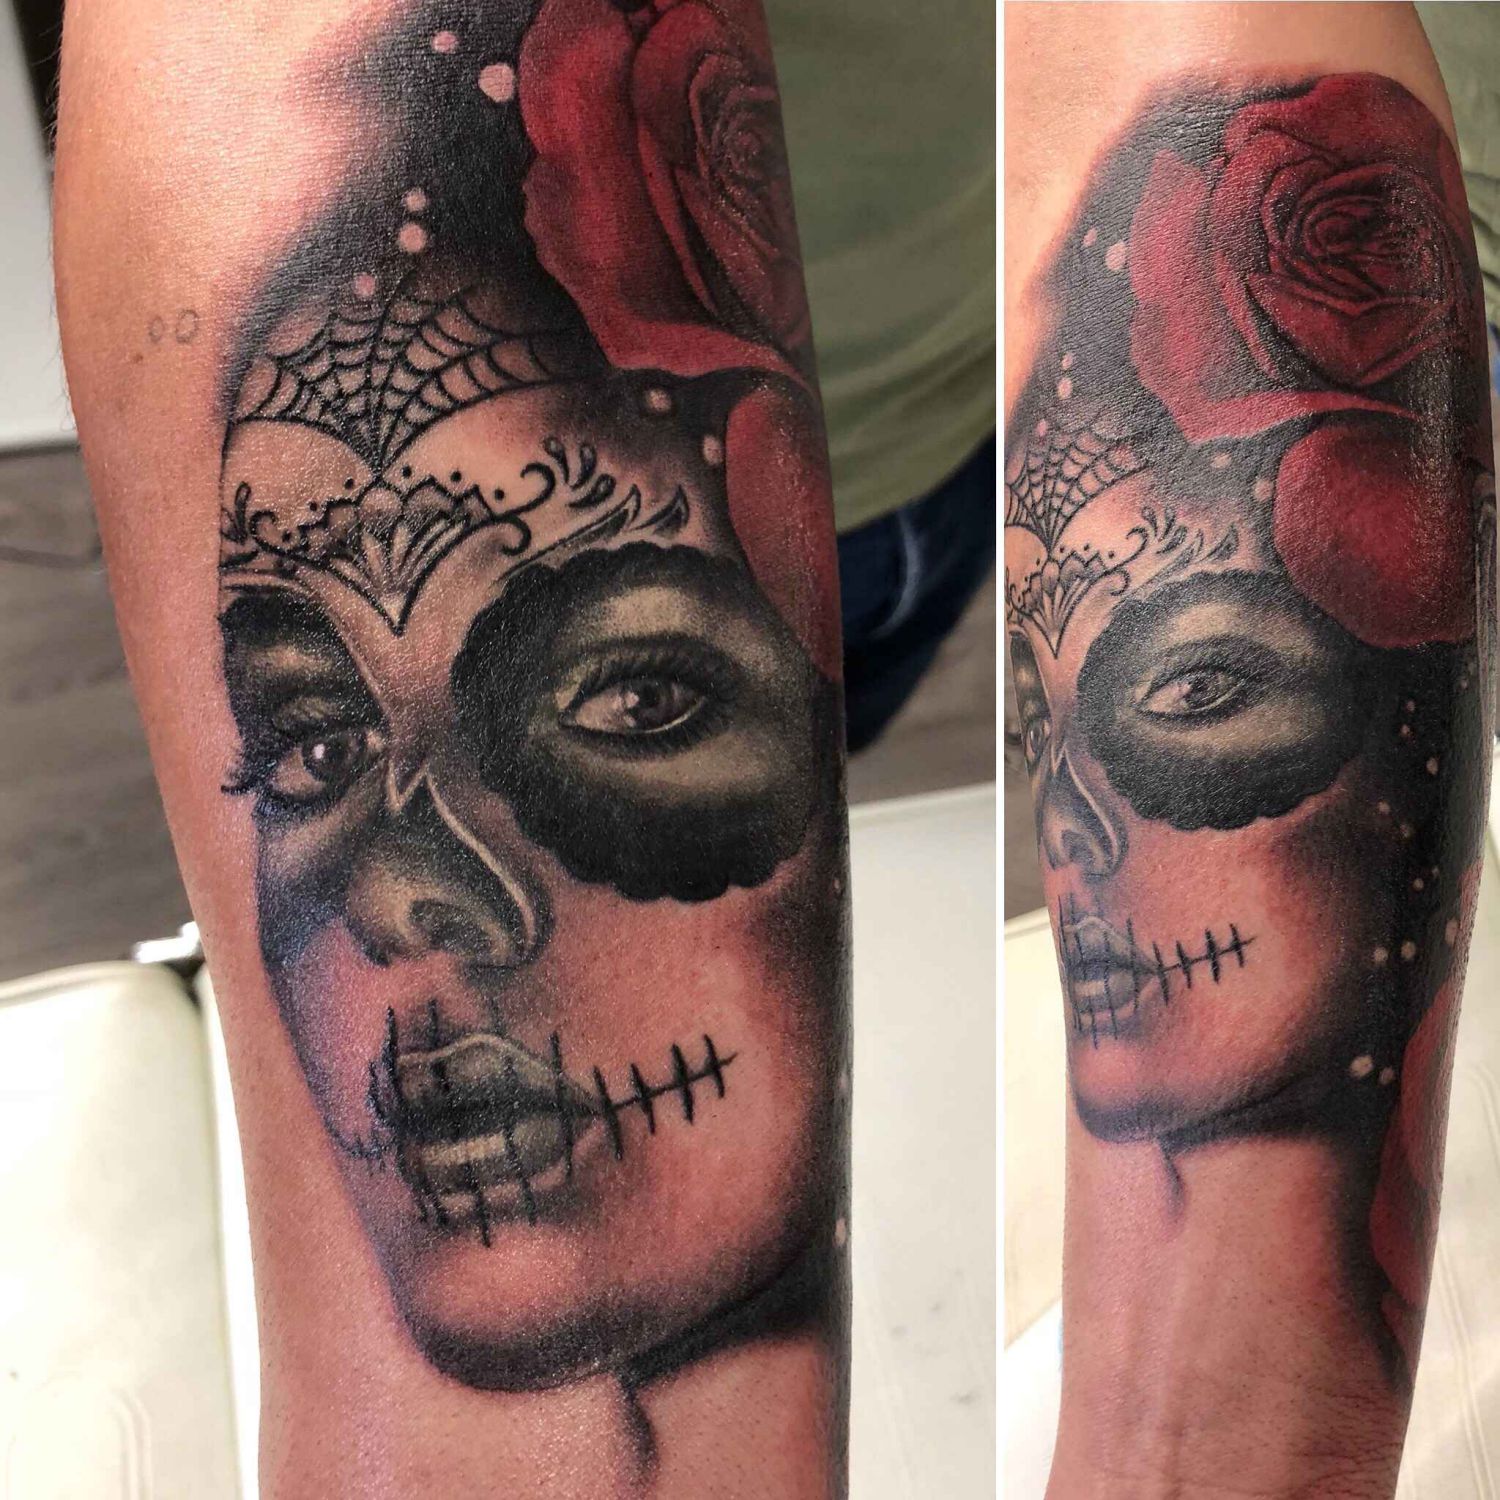  Tattoo-Design einer Rose